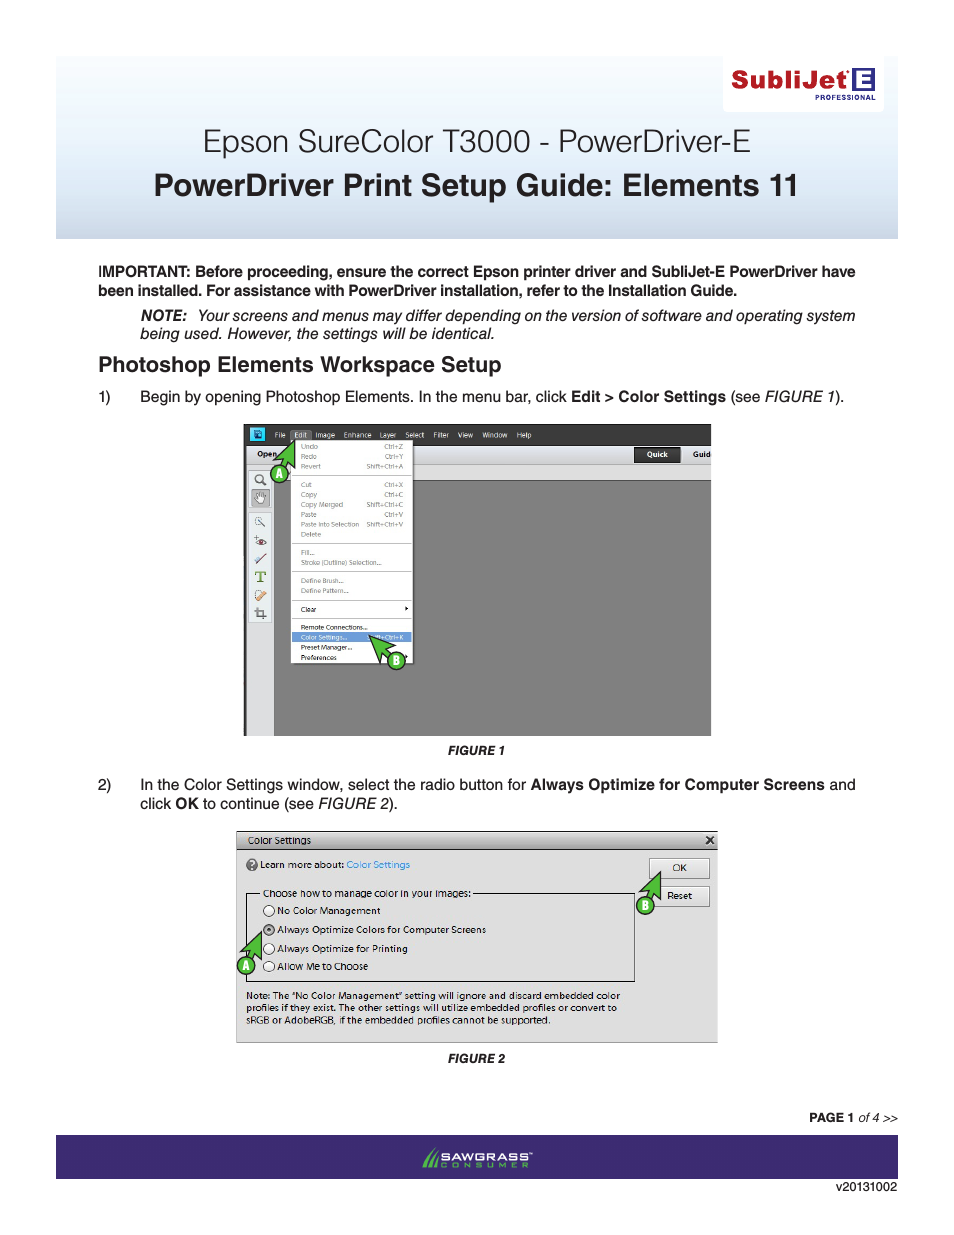 SubliJet E Epson SureColor T3000 (Power Driver Setup): Print & Setup Guide Photoshop Elements 11